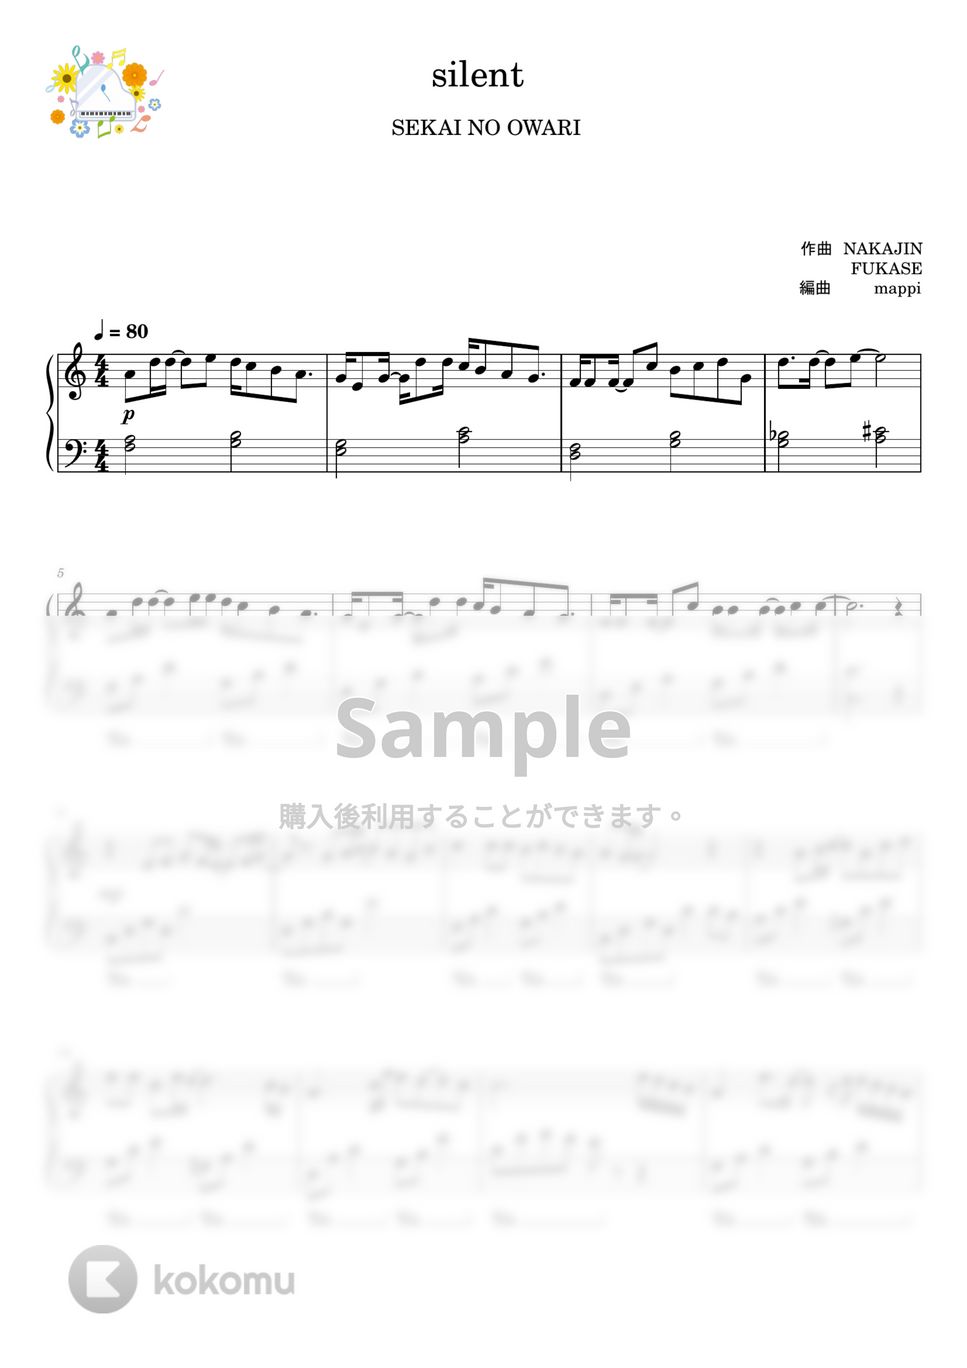 SEKAI NO OWARI - silent (私にも弾ける/この恋あたためますか/シンプルアレンジ) by pup-mappi